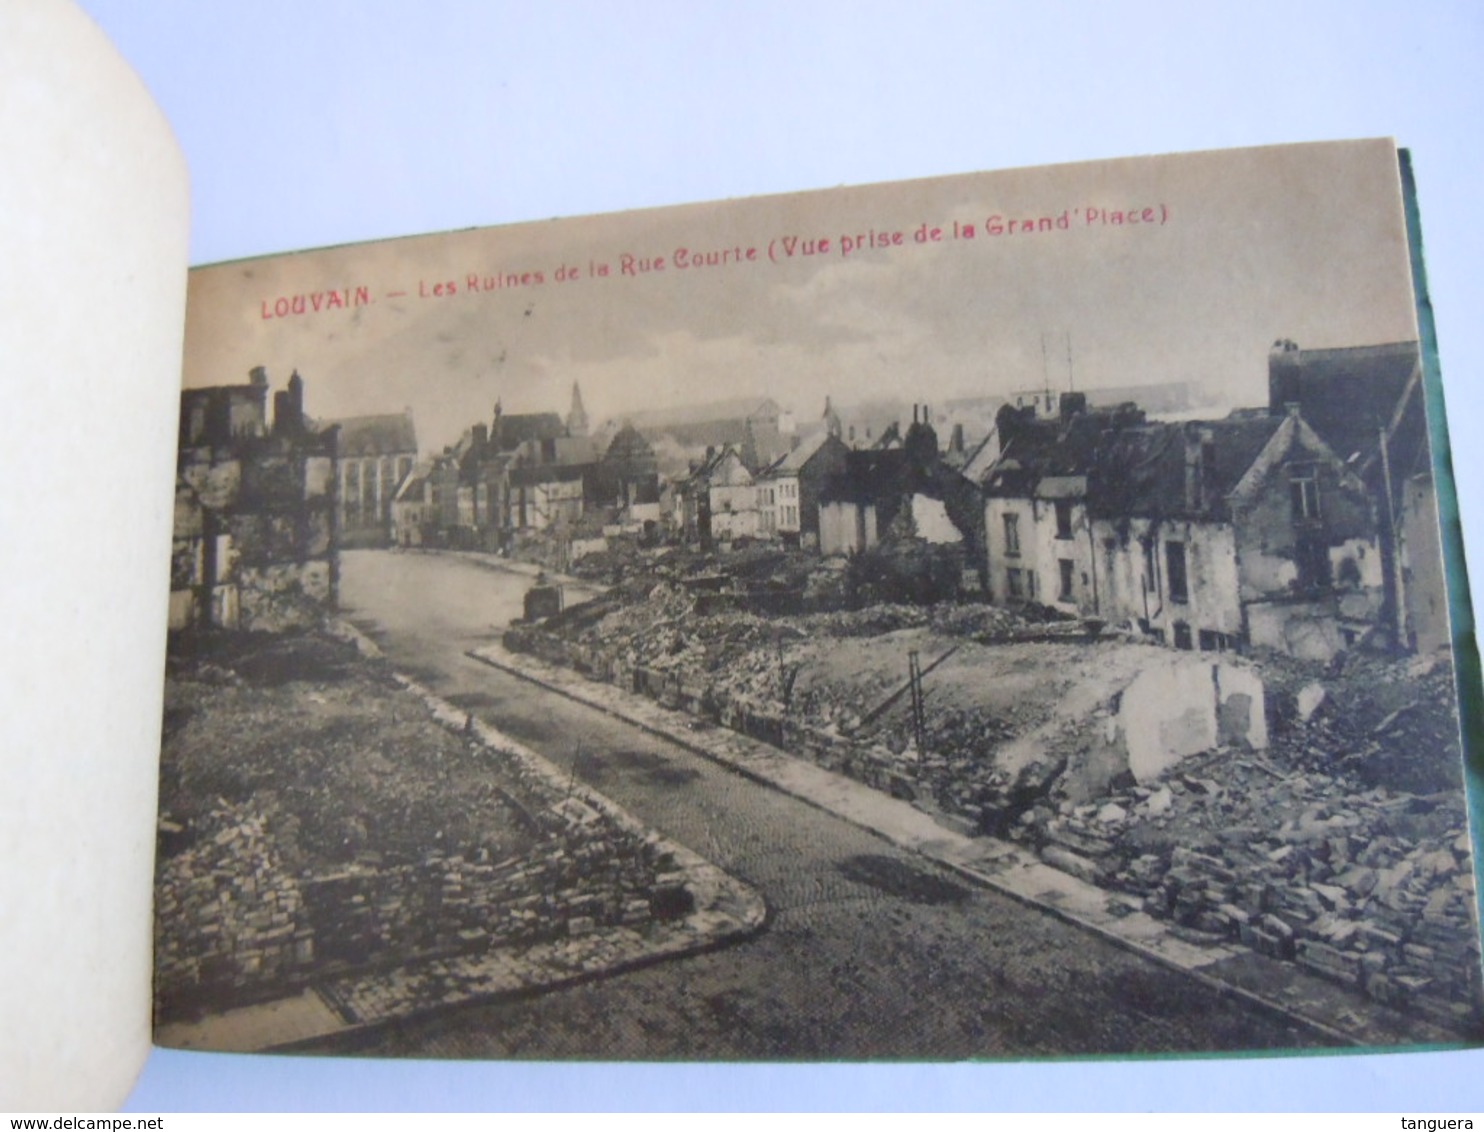 Les ruines de Louvain Leuven cartes vues 1914 Edit PhoB 2 kaarten zijn los en verstuurd,  7 kaarten vast in het boekje